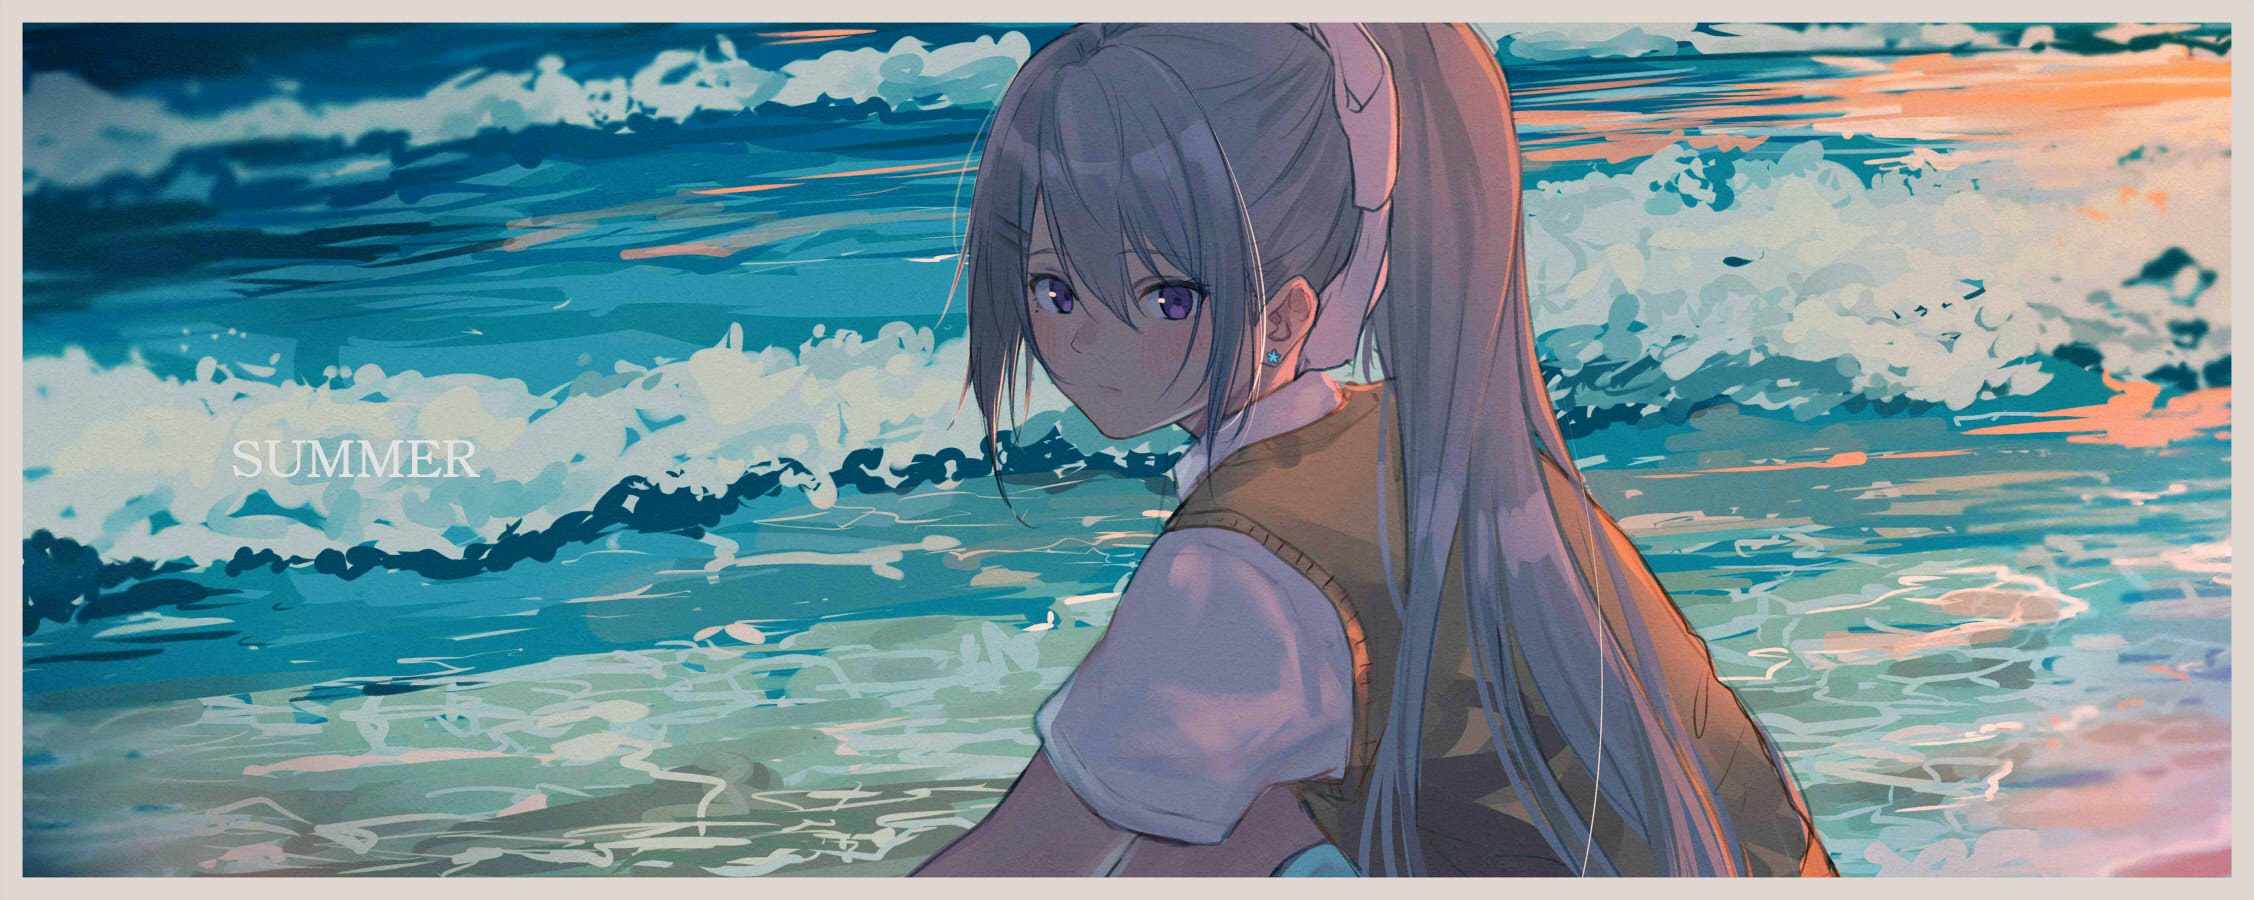 Anime Digital Art Artwork 2D Illustration Anime Girls Sea 2254x900